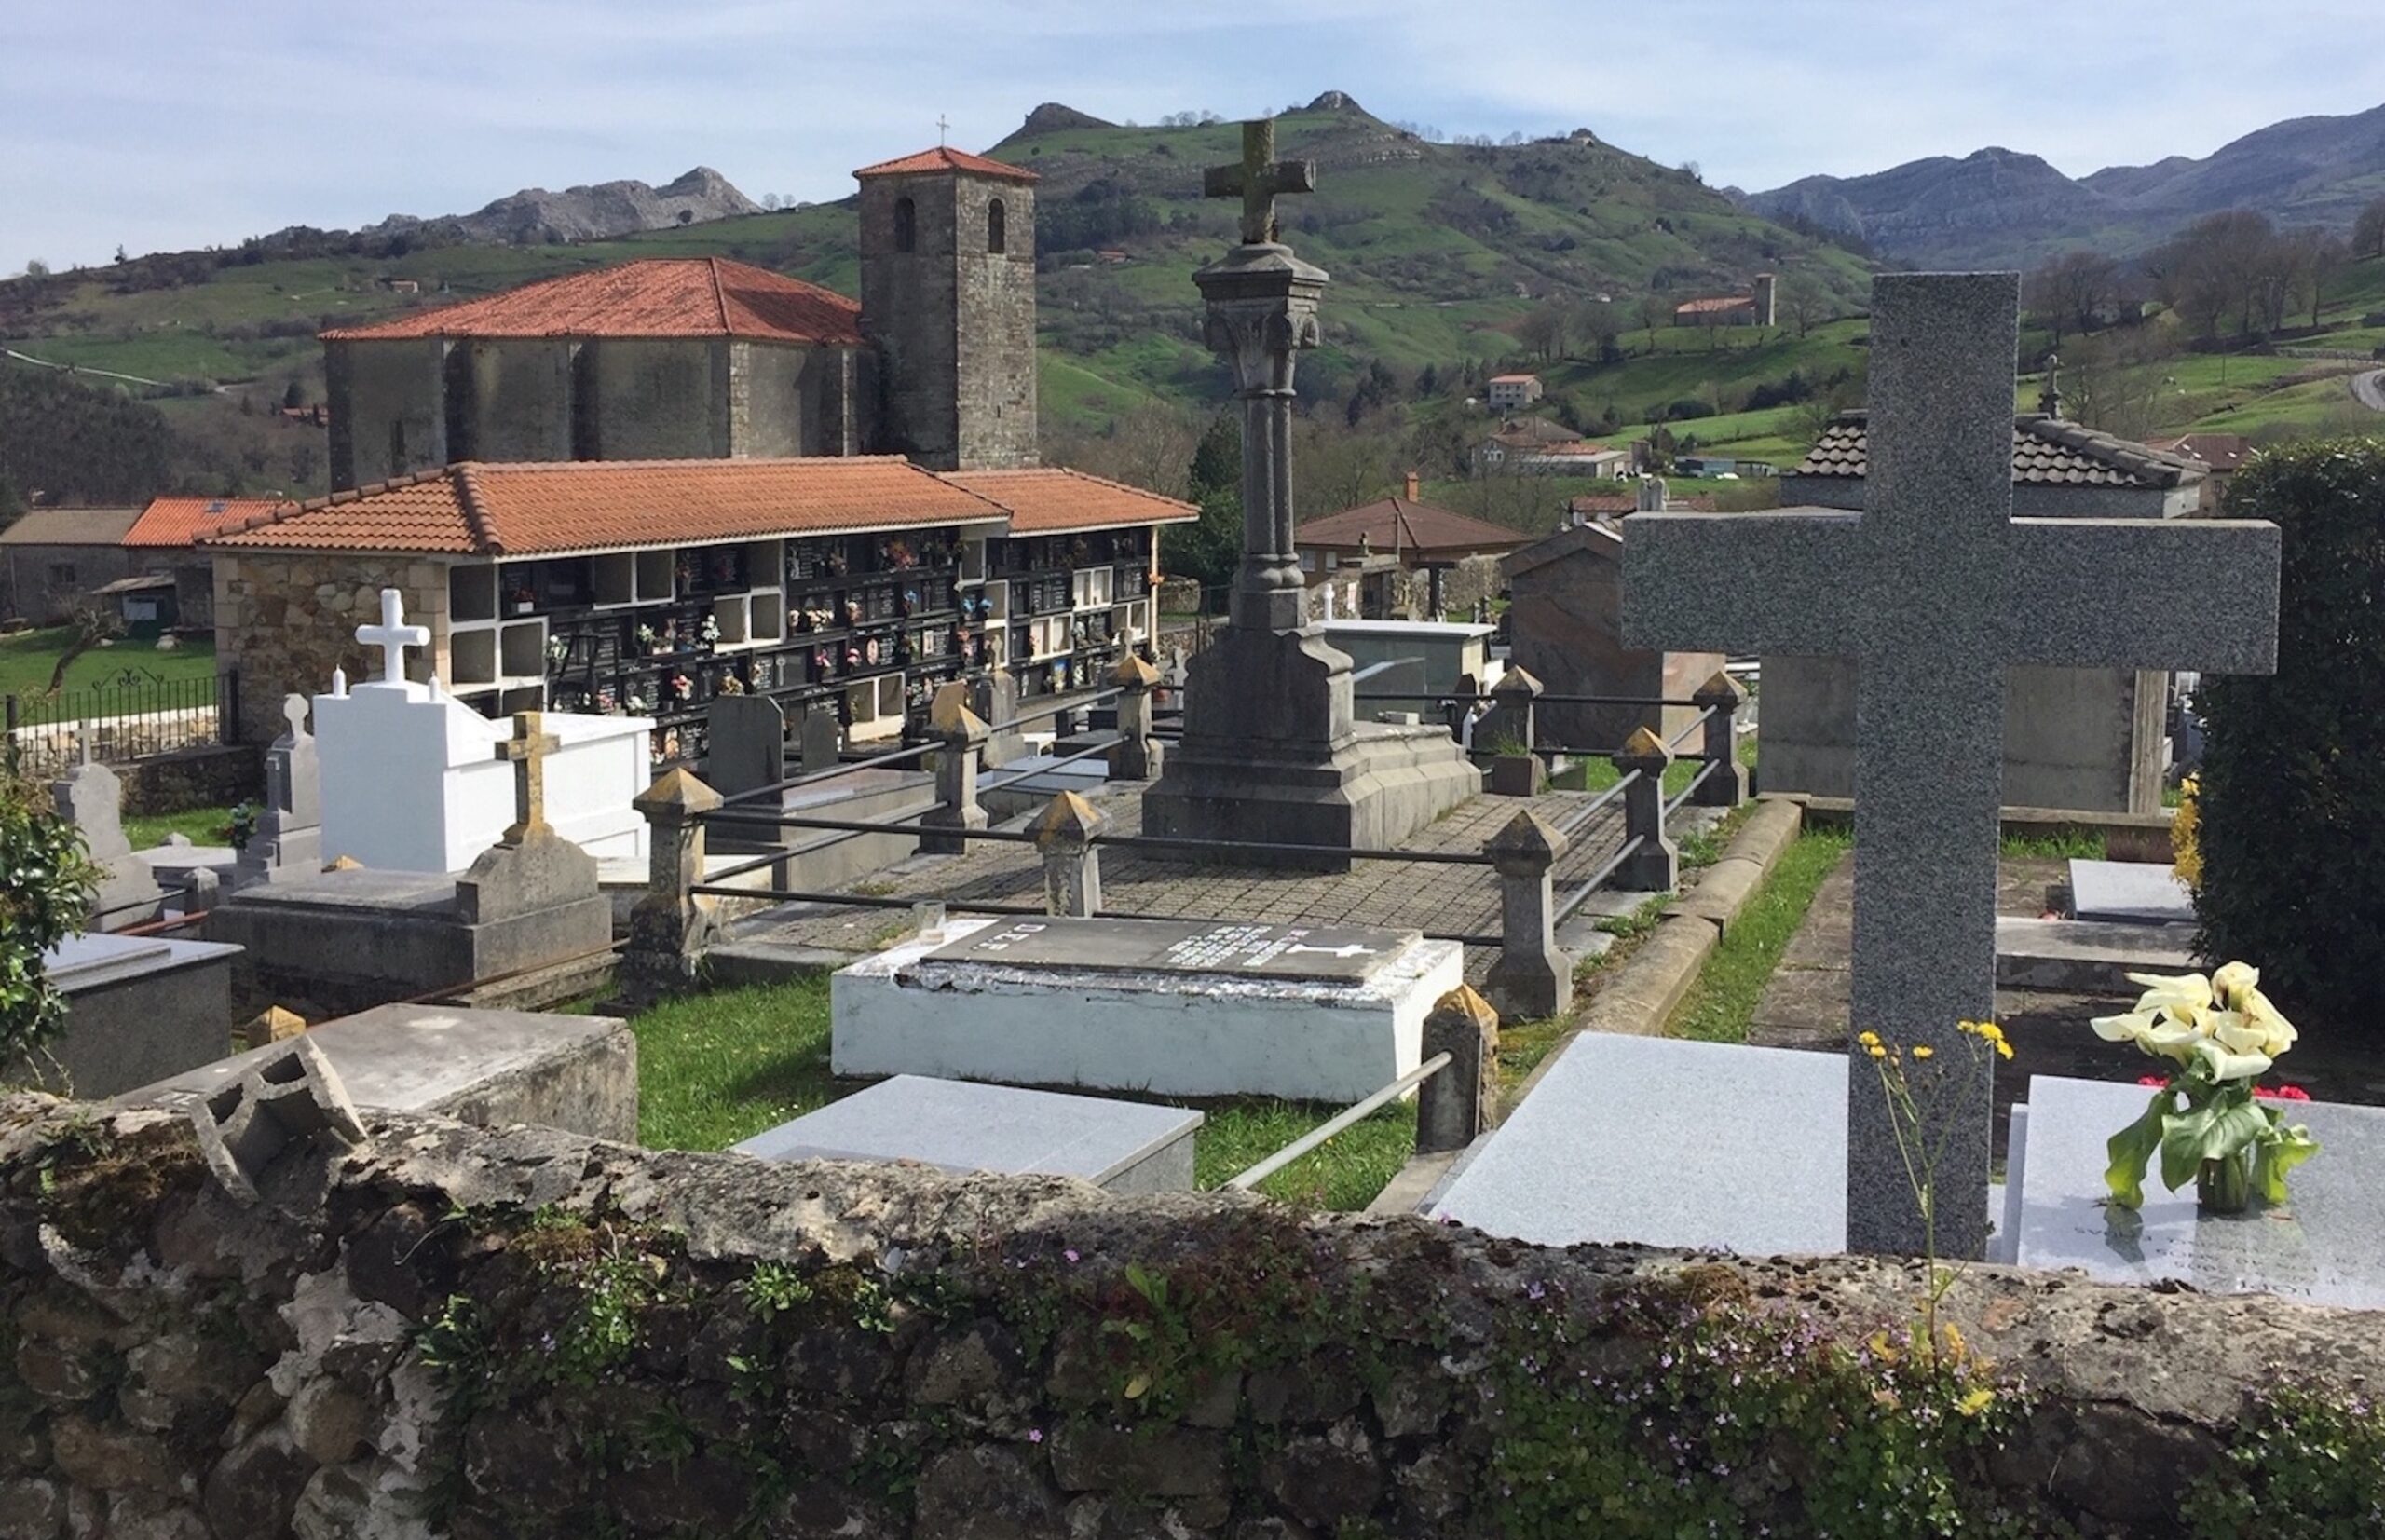 Inician la tercera fase de ampliación del cementerio de Liérganes con la construcción de 56 nuevos nichos